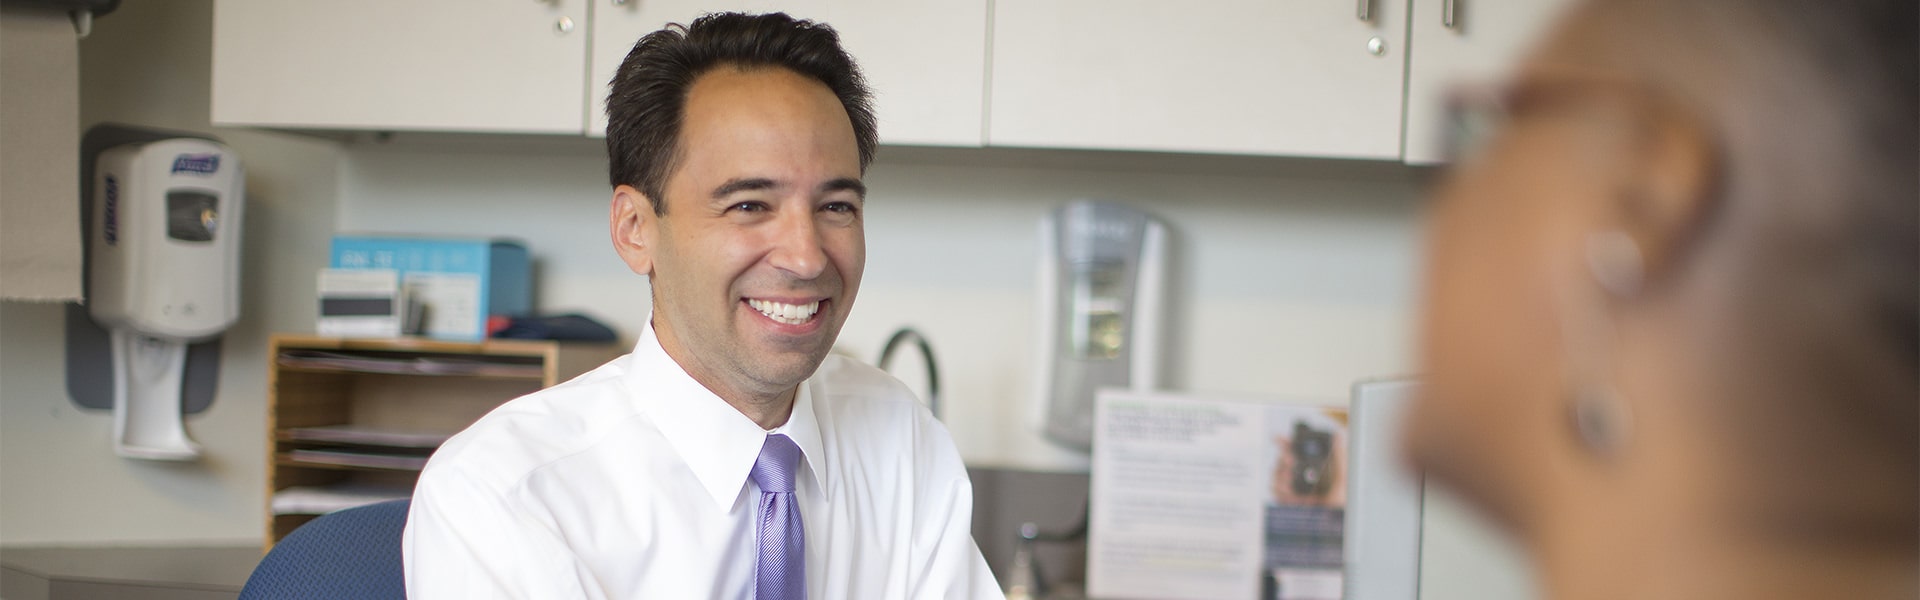 Dr. Michael Via talks to endocrine patient